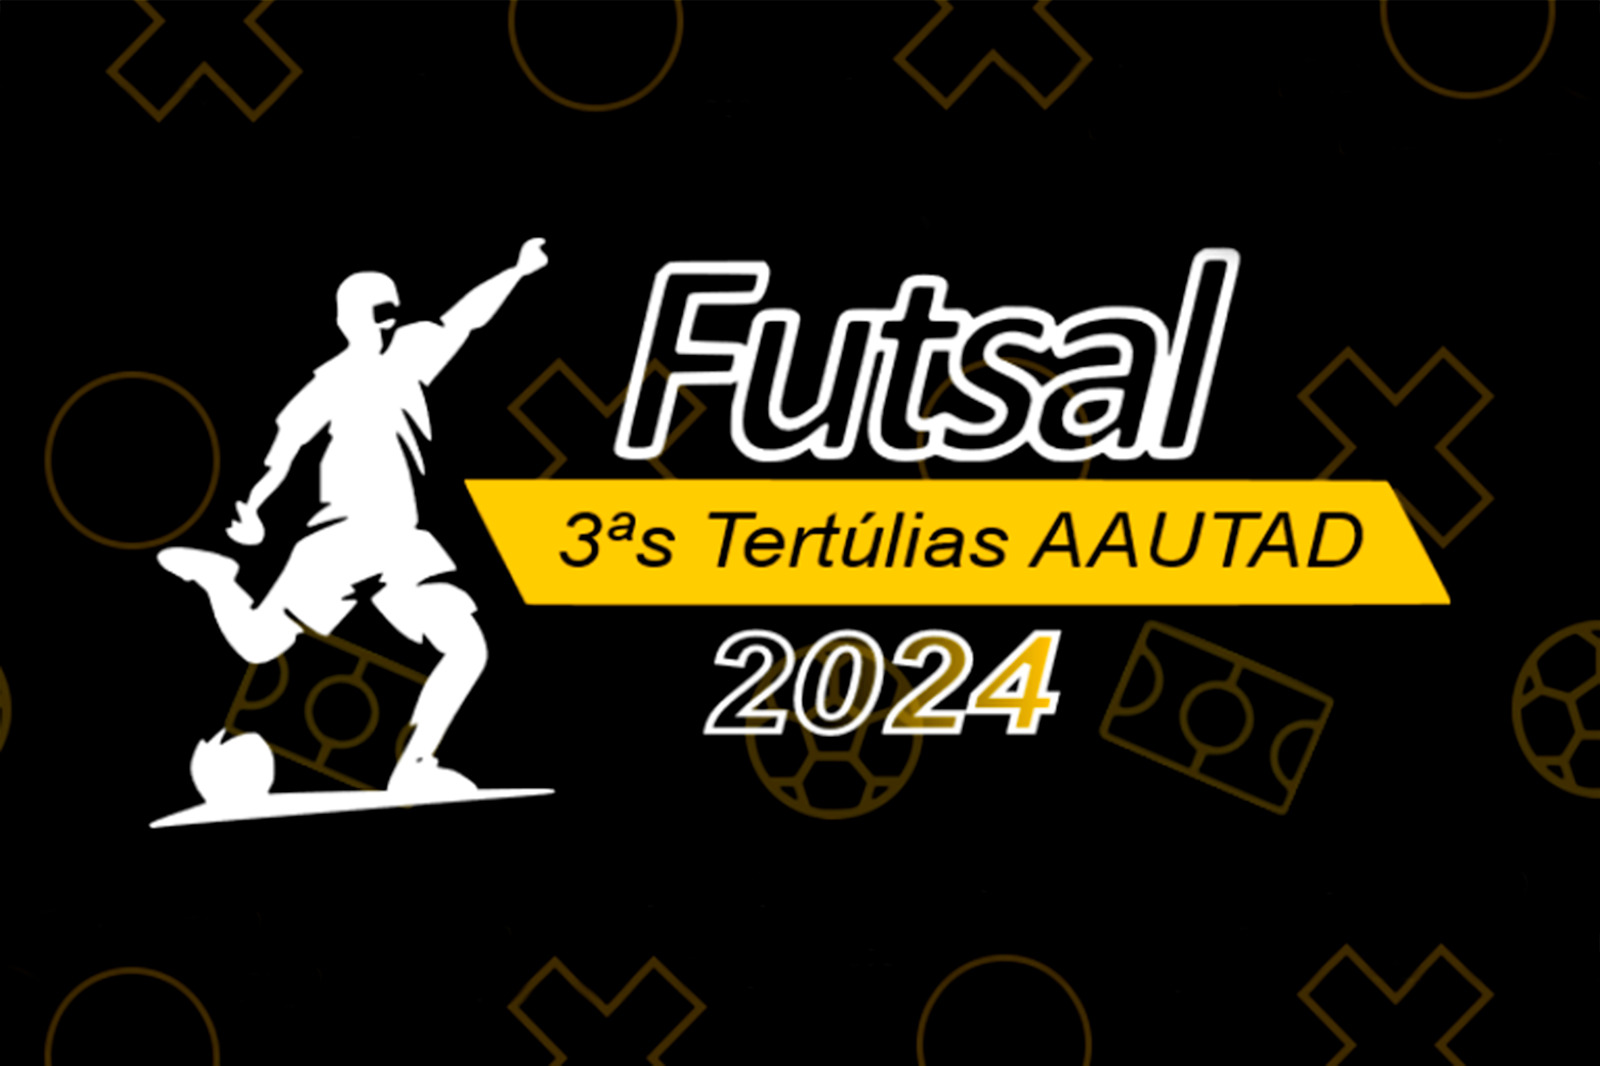 3ª Tertúlias de Futsal AAUTAD – Formação Contínua 